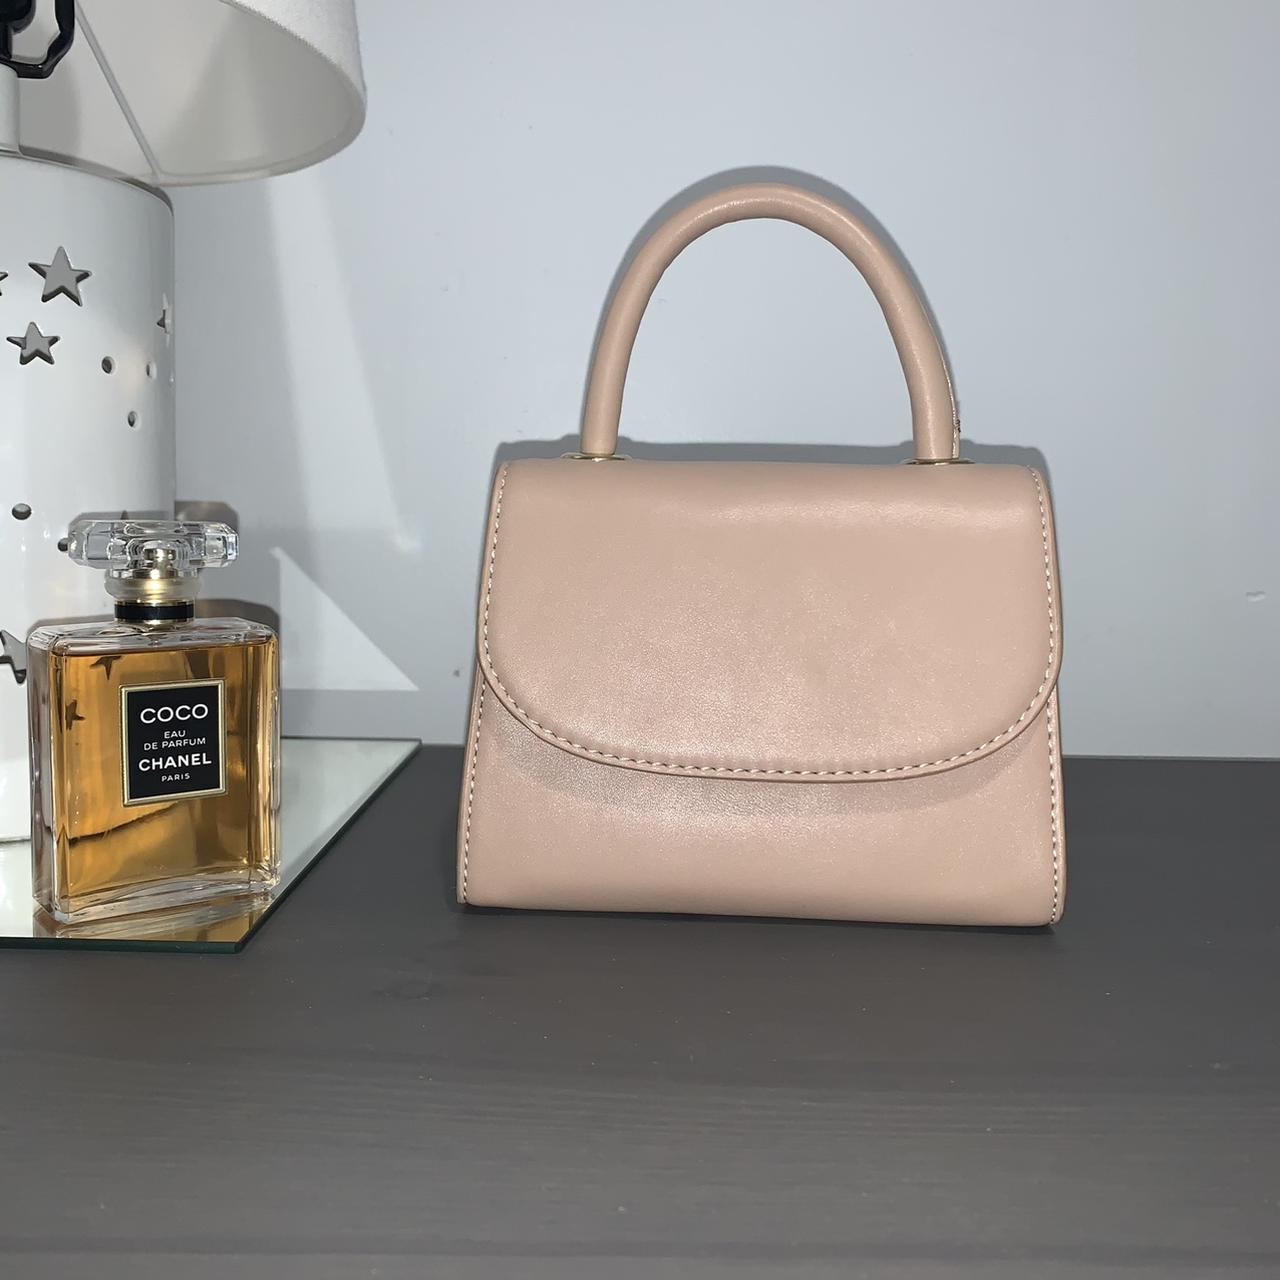 Product Image 1 - BRAND NEW
Moda Luxe mini purse
2